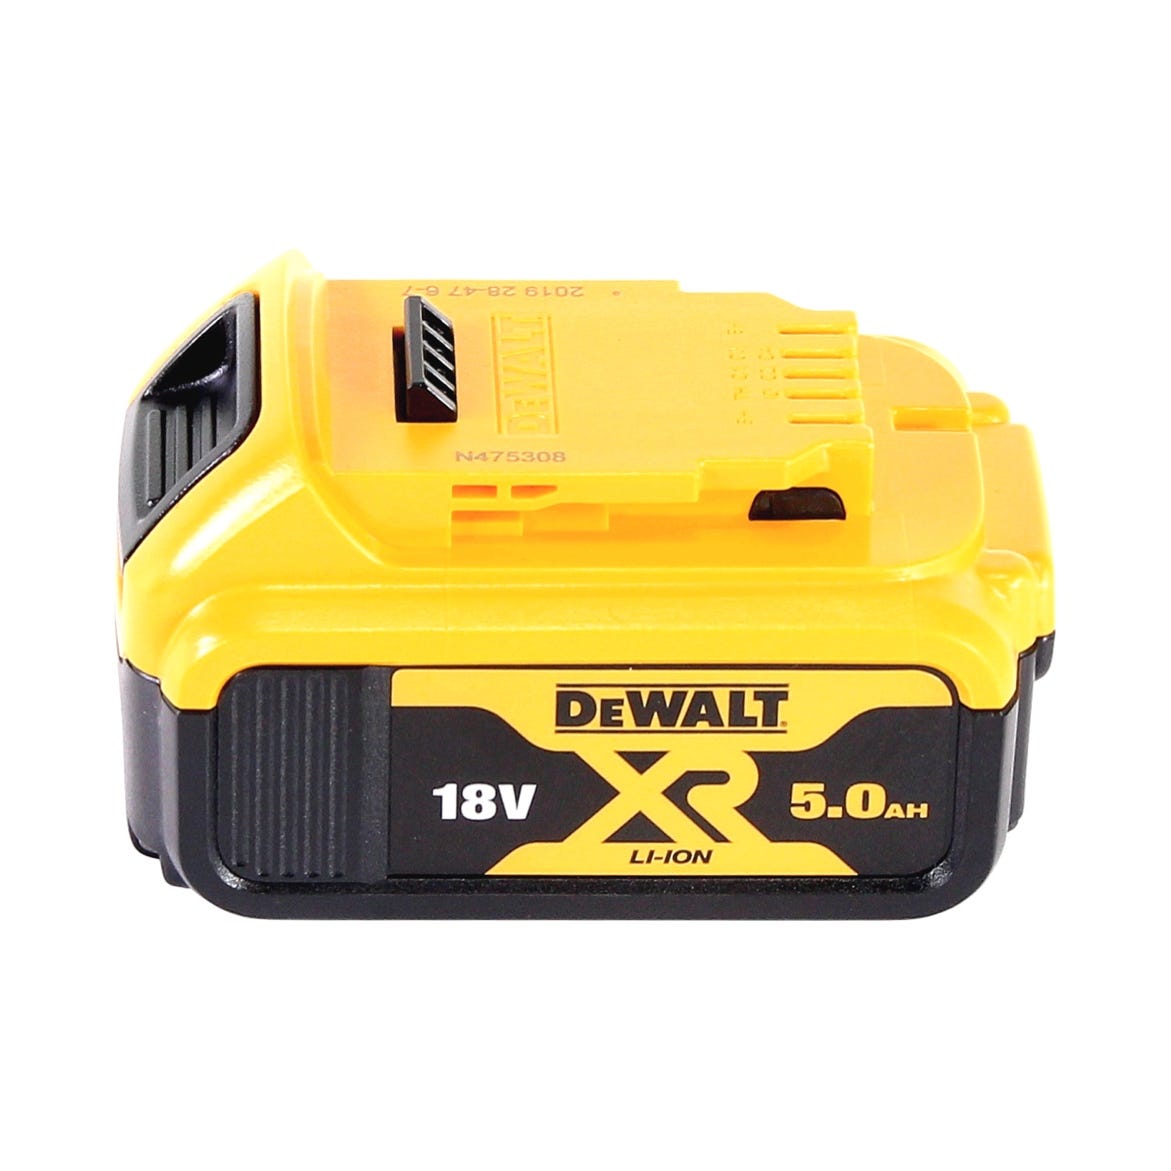 DeWalt DCS 391 N Scie circulaire sans fil 18V 165 mm + 1x Batterie 5,0Ah + Lame de scie - sans chargeur 2